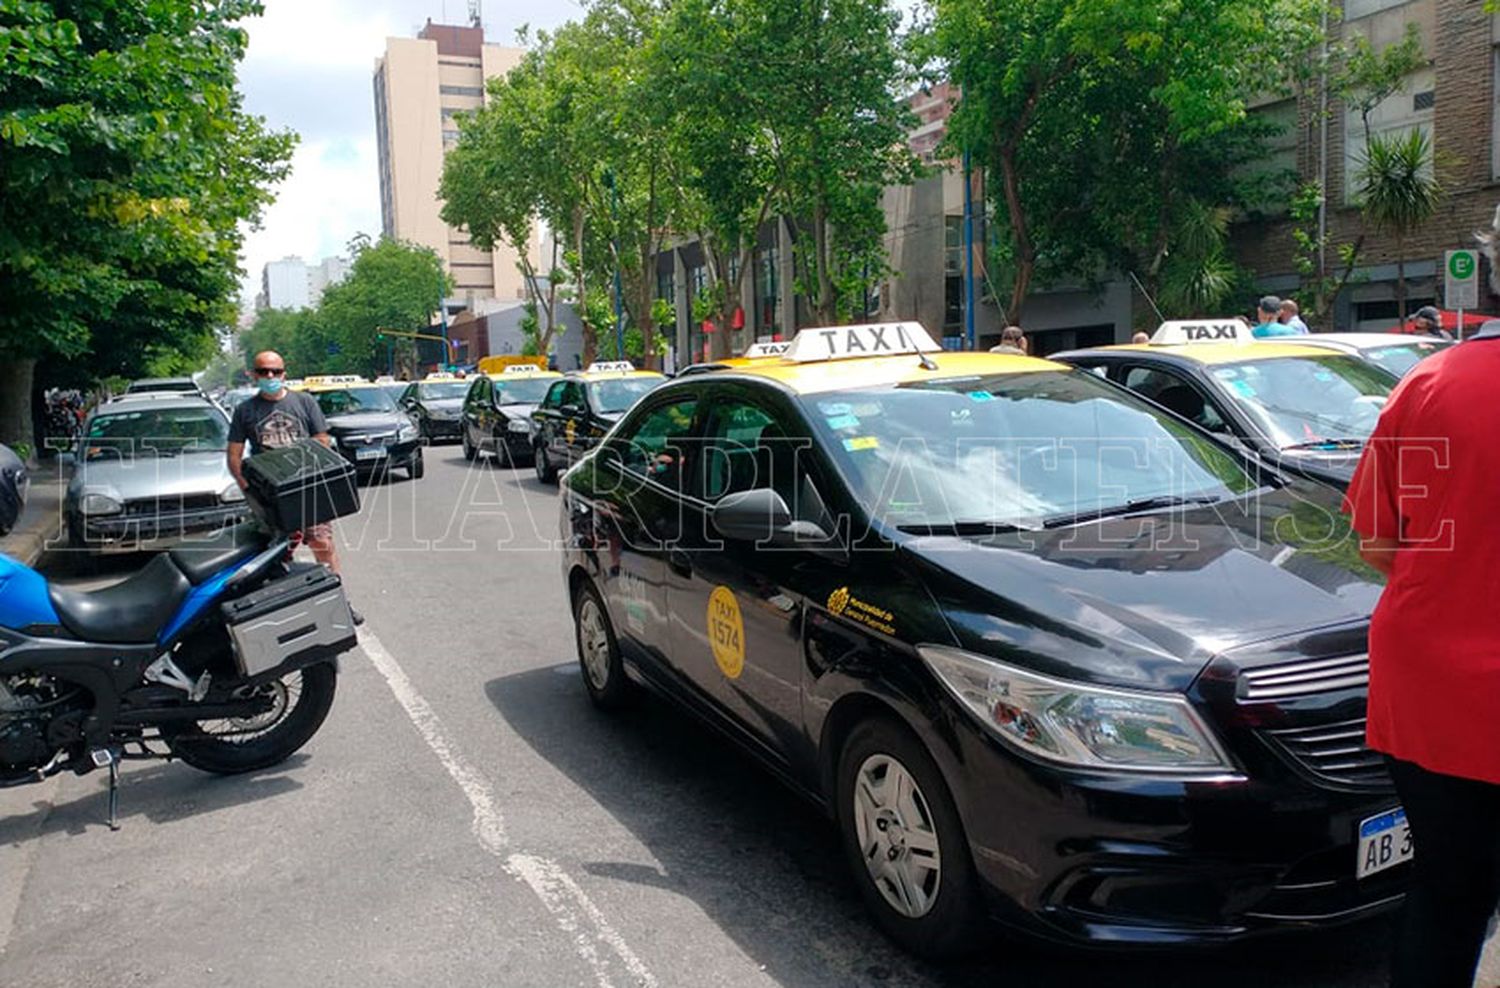 Secretaría de Producción: "Se necesitan aproximadamente 500 choferes de taxis y remises"